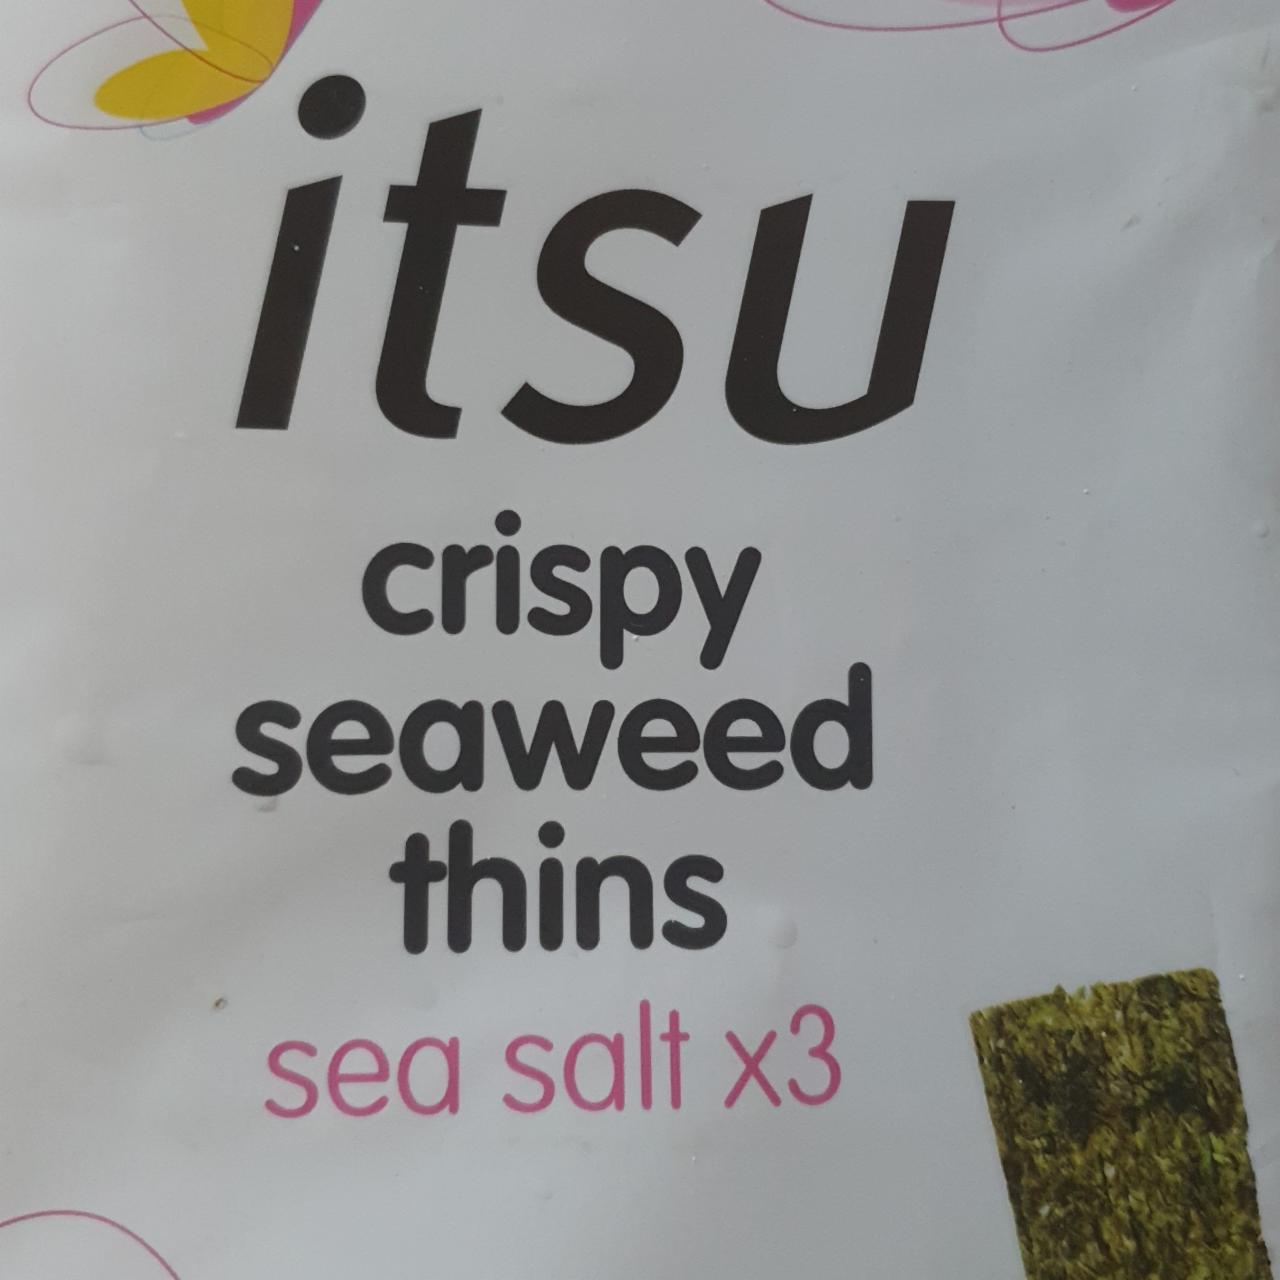 Fotografie - Crispy seaweed thins sea salt itsu